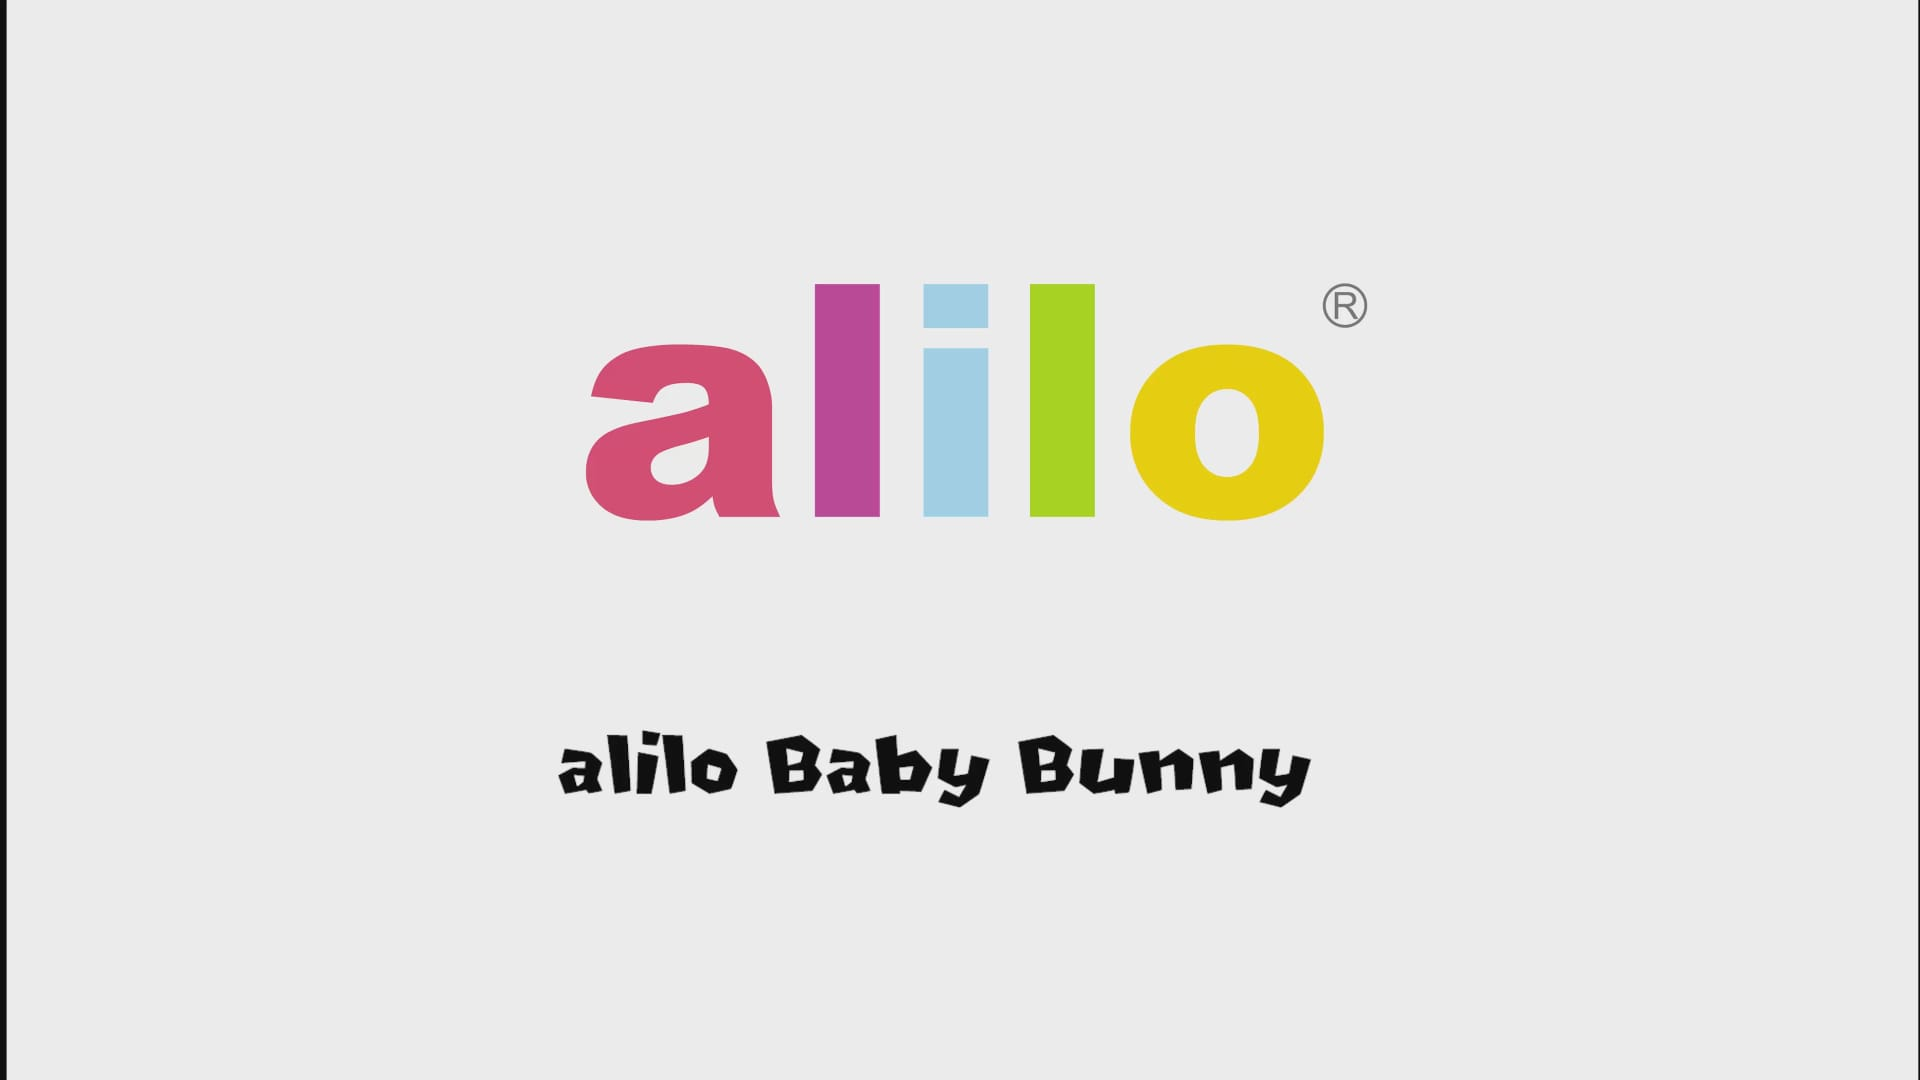 Alilo Baby Bunny